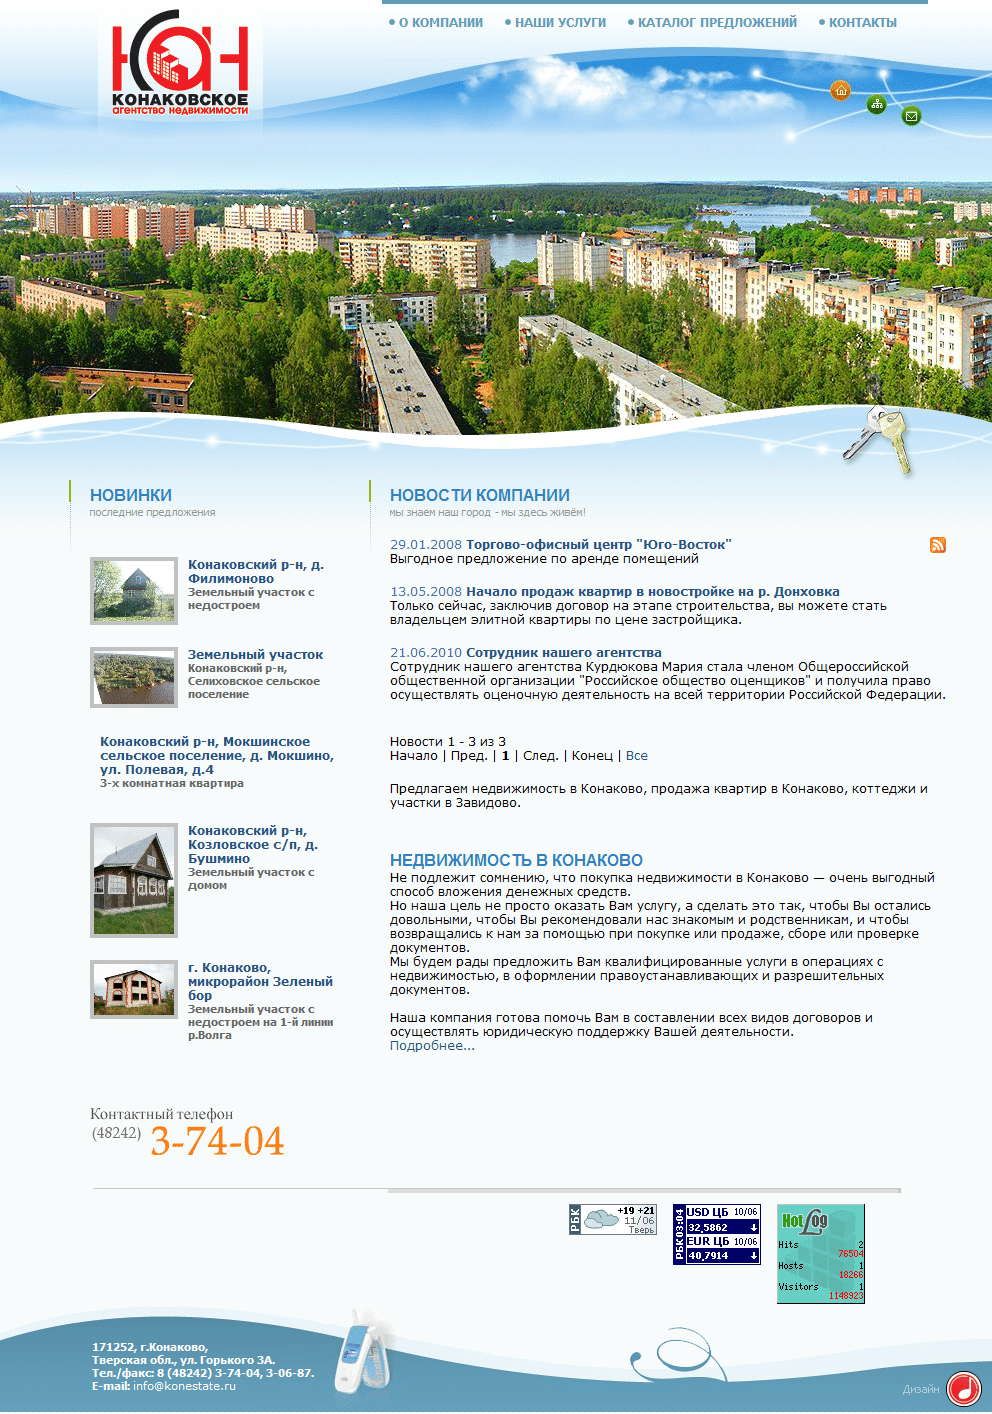 Создание сайта агентства недвижимости